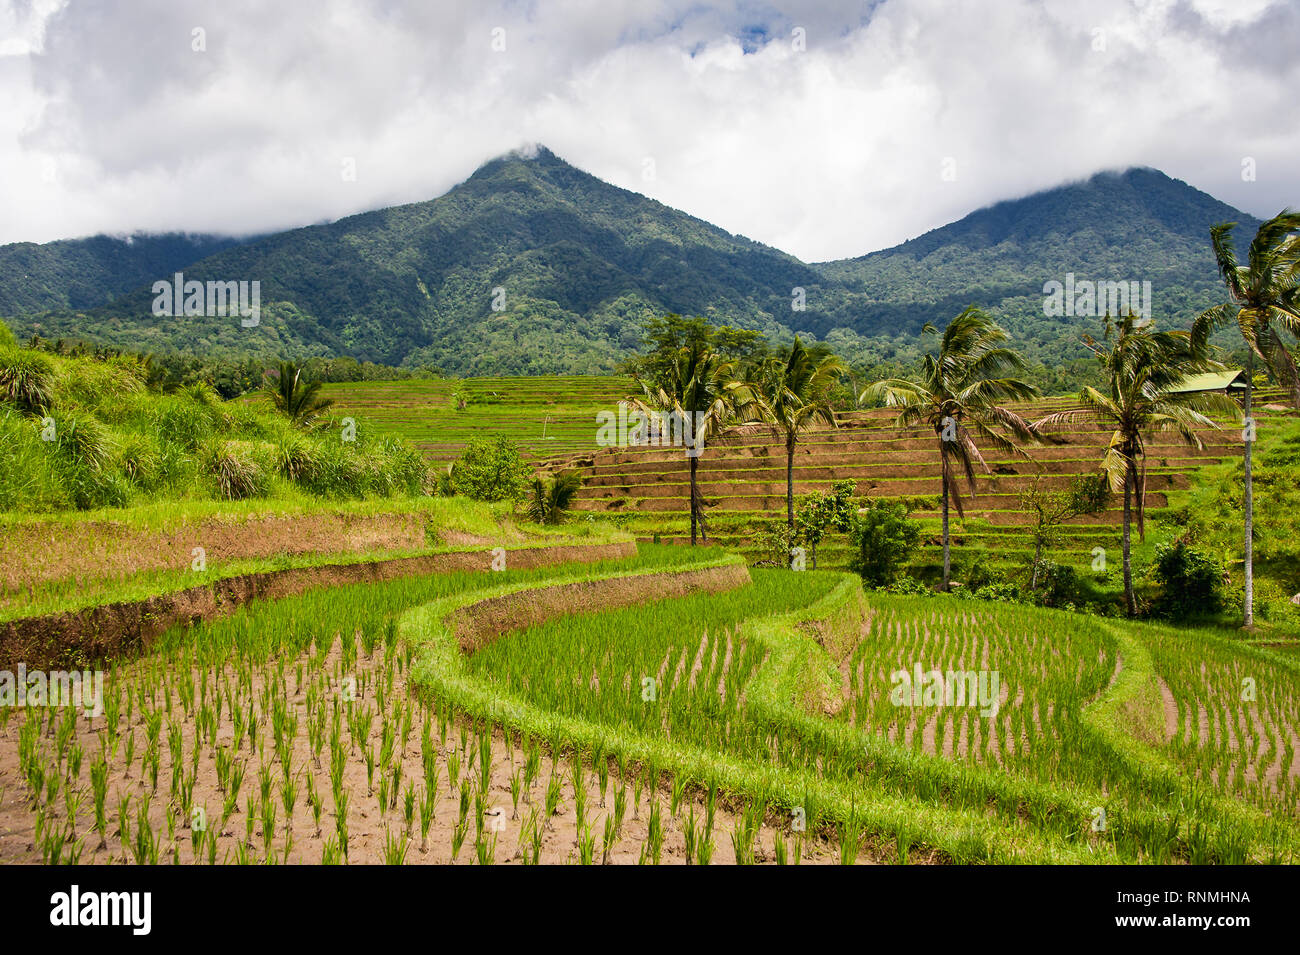 Rizières en terrasses de Jatiluwih, Bali, Indonésie. Beau paysage des Highlands, des rizières vert avec vue sur la montagne Batukaru derrière Banque D'Images